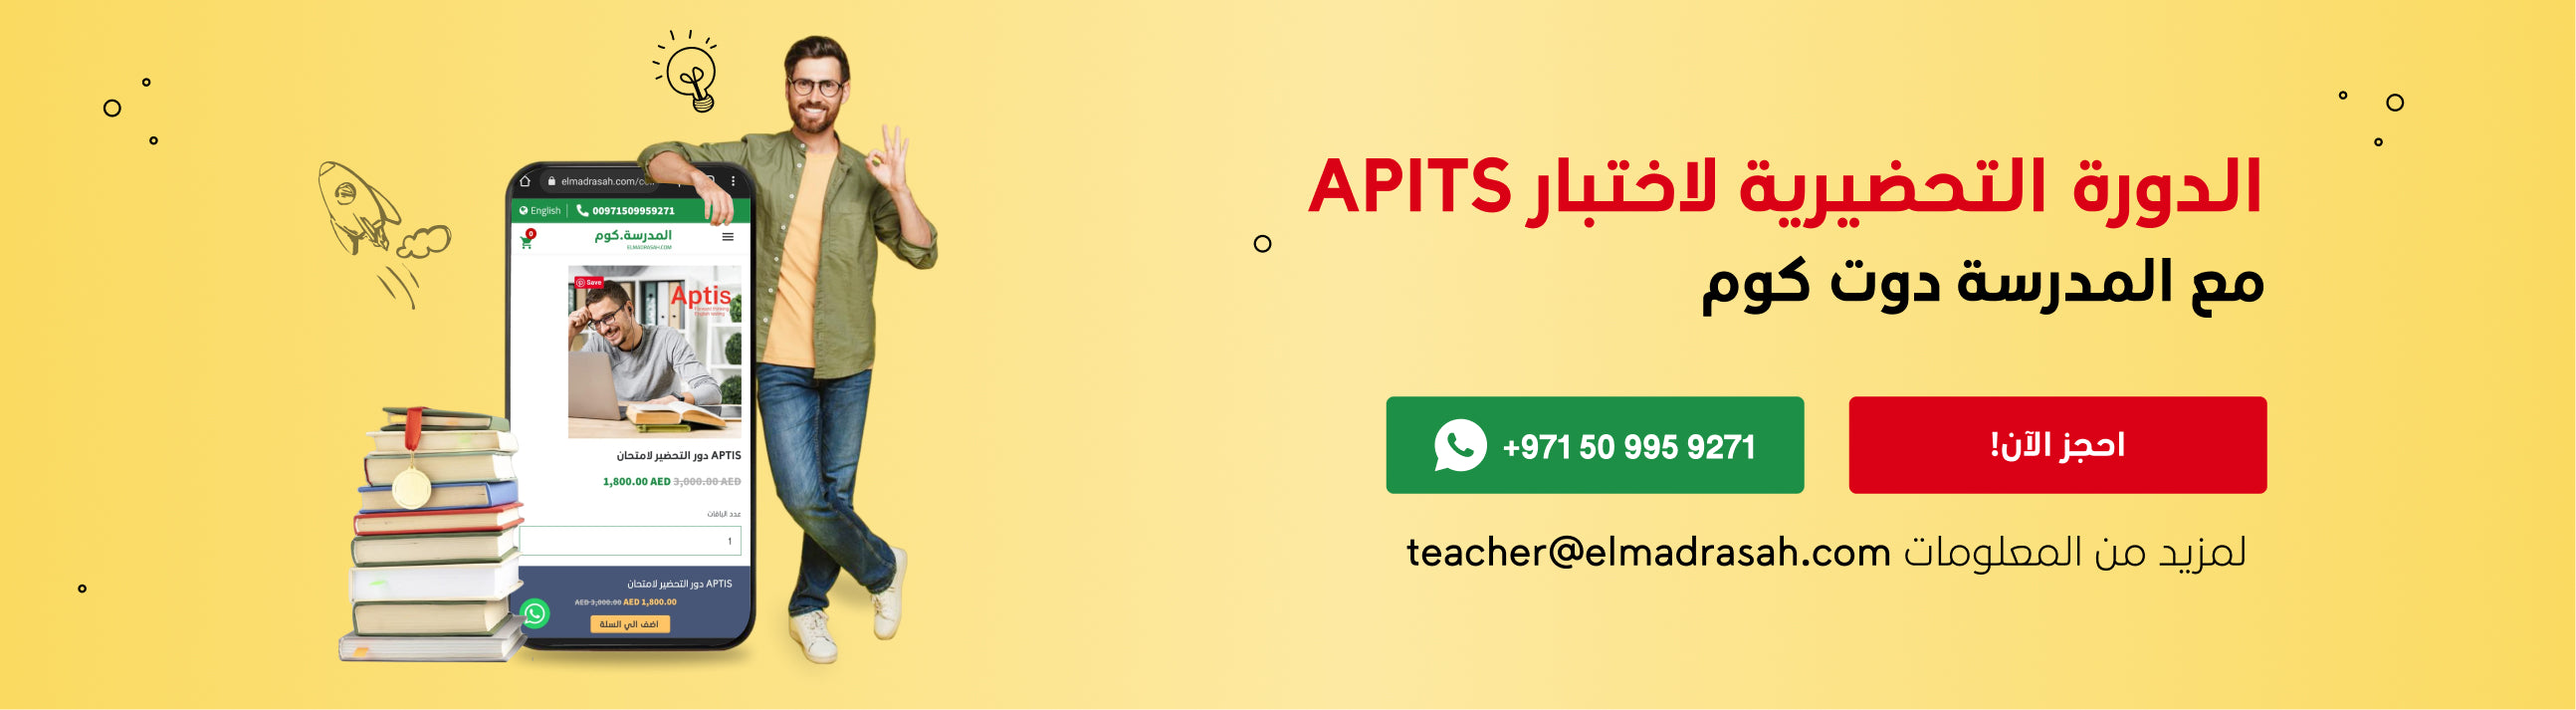 فوائد دورة التحضير لاختبار APTIS فى الامارات والسعودية مع المدرسة